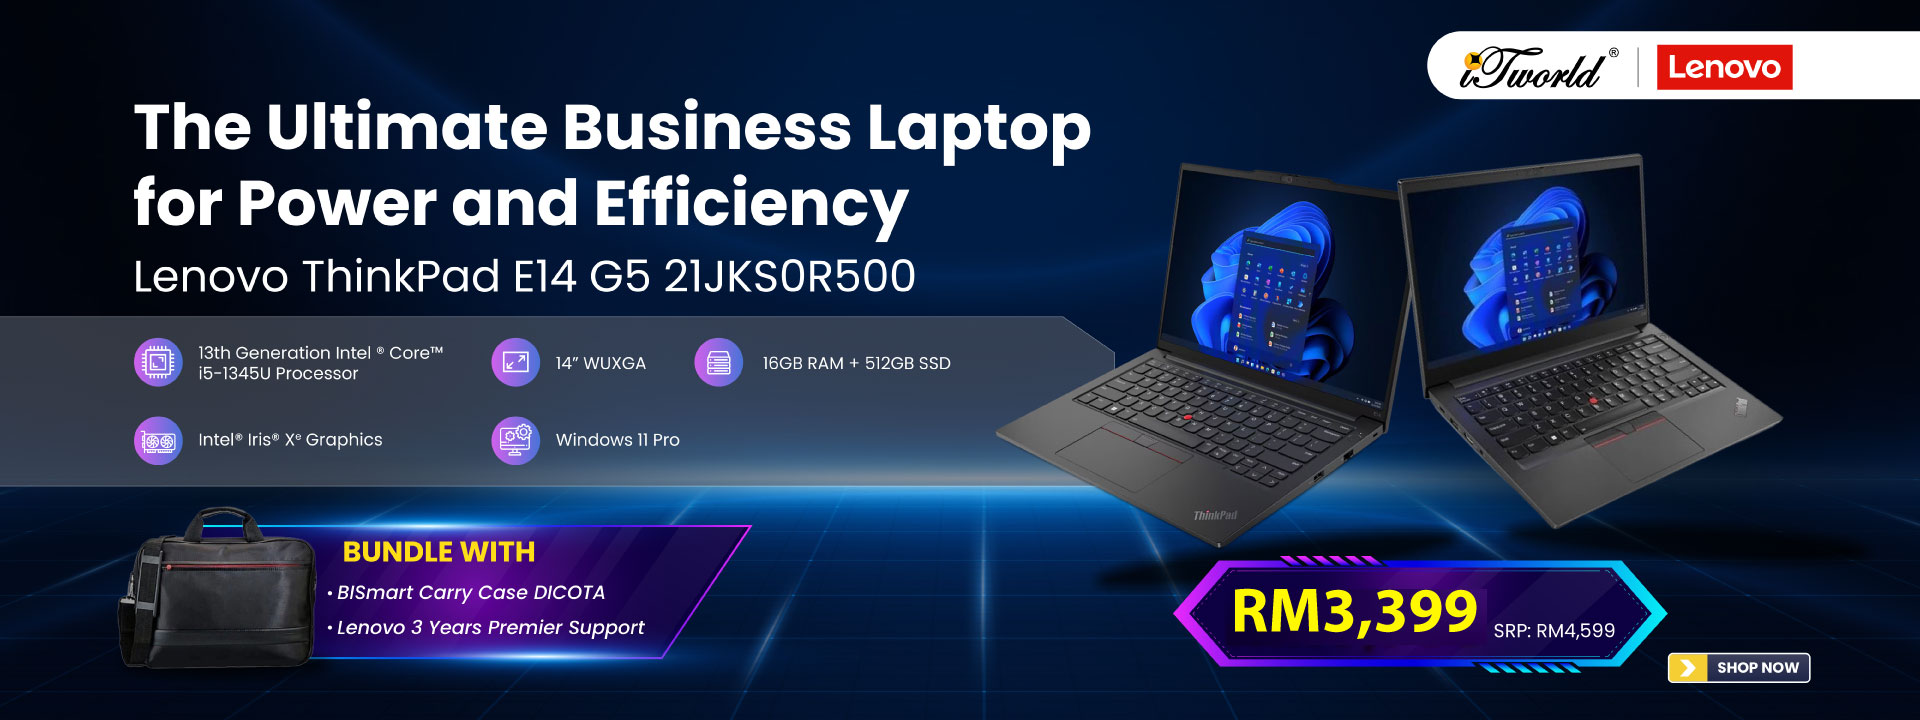 Lenovo ThinkPad E14 G5 21JKS0R500